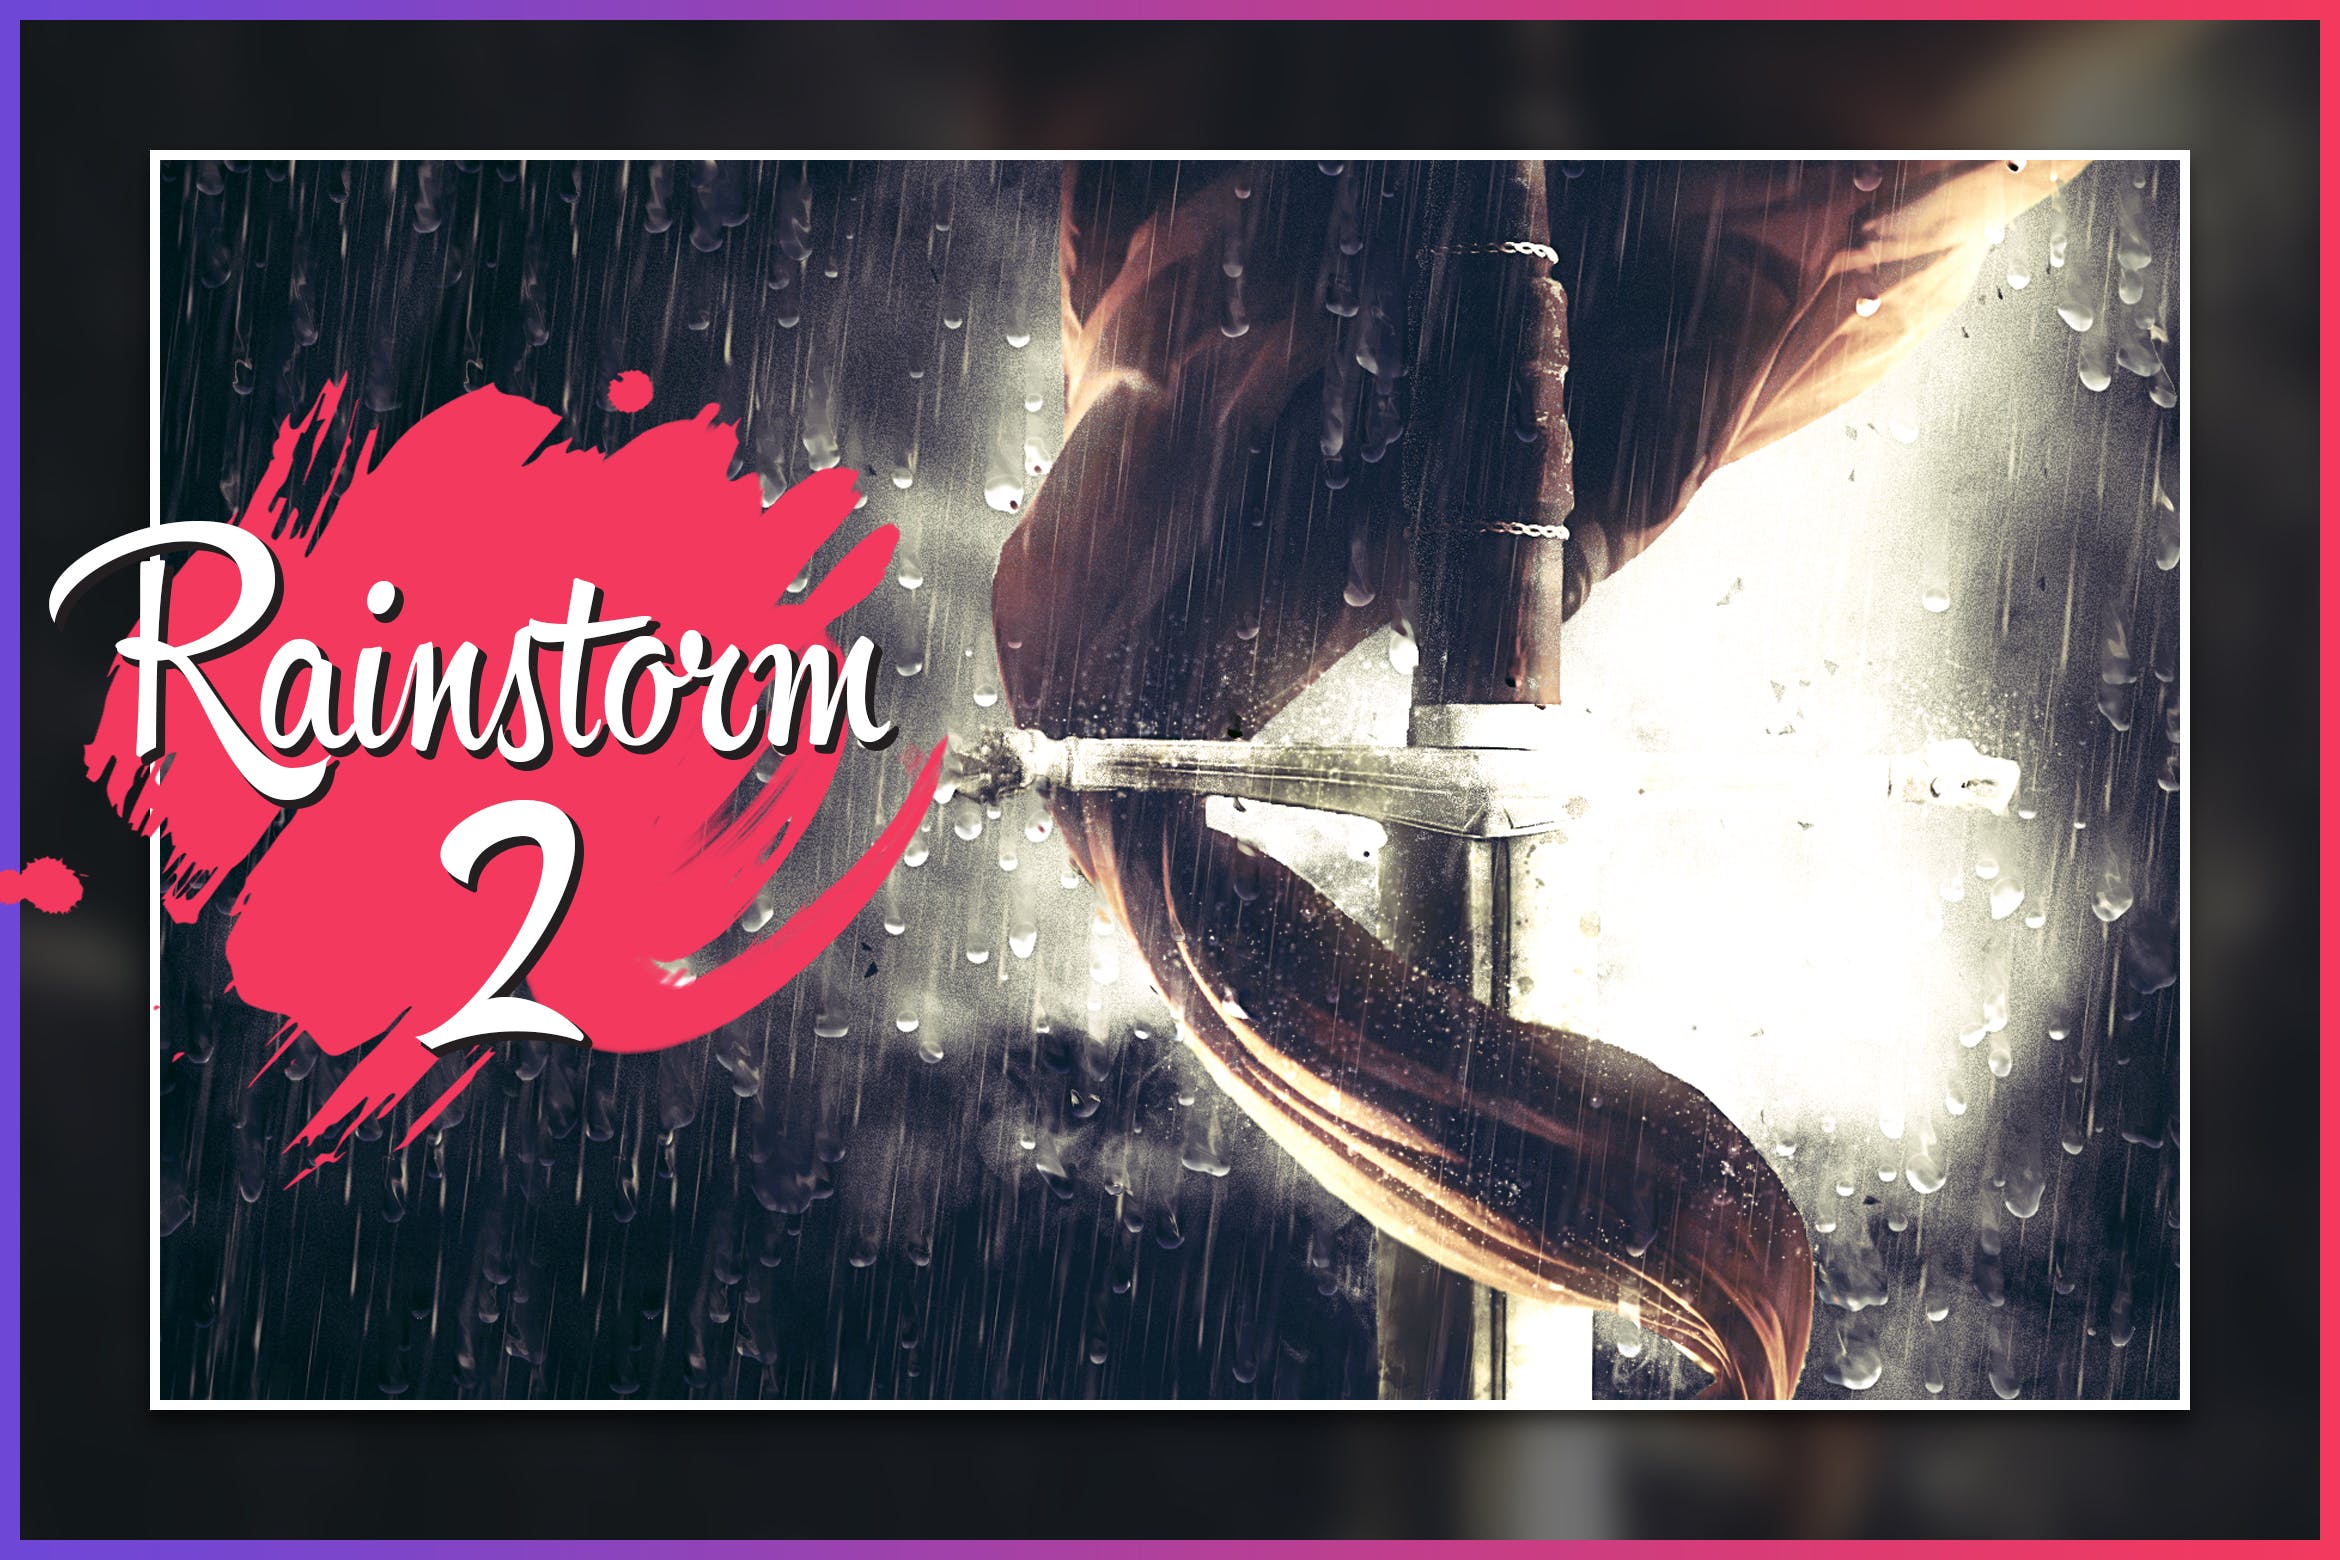 暴风雨照片背景特效非凡图库精选PS动作 Rainstorm 2 CS4+ Photoshop Action插图